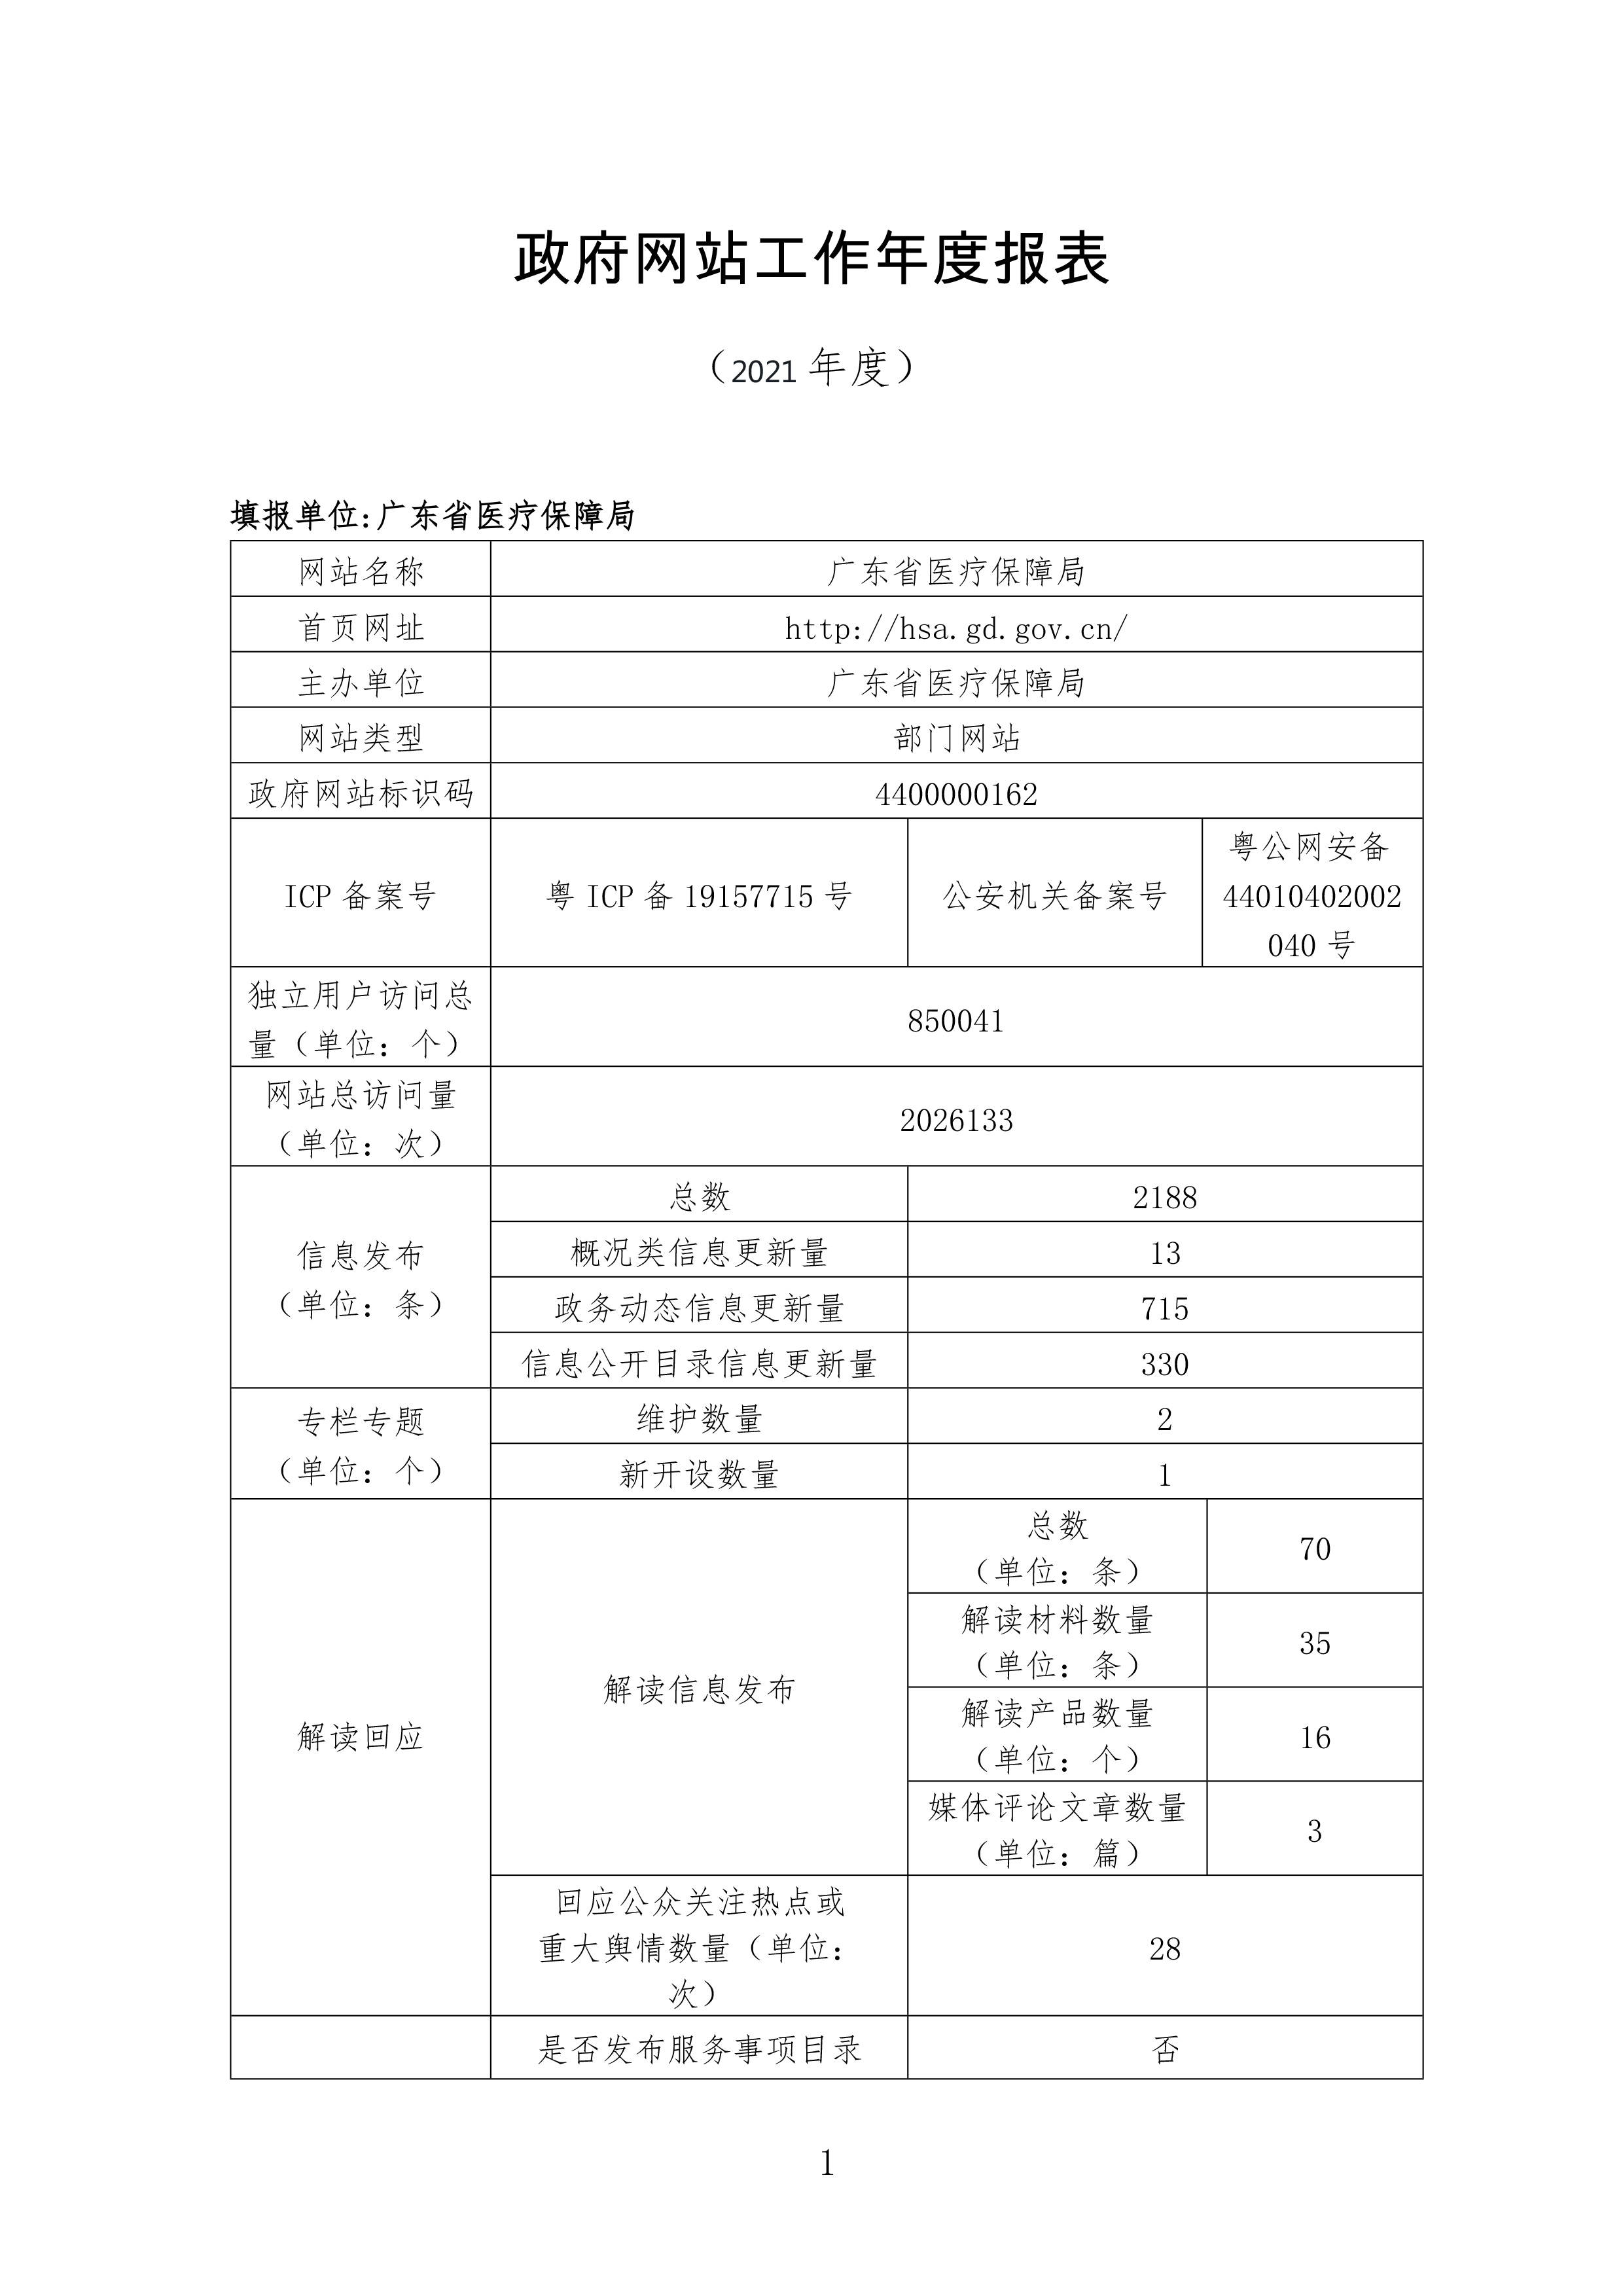 广东省医疗保障局政府网站年度工作报表-1.jpg